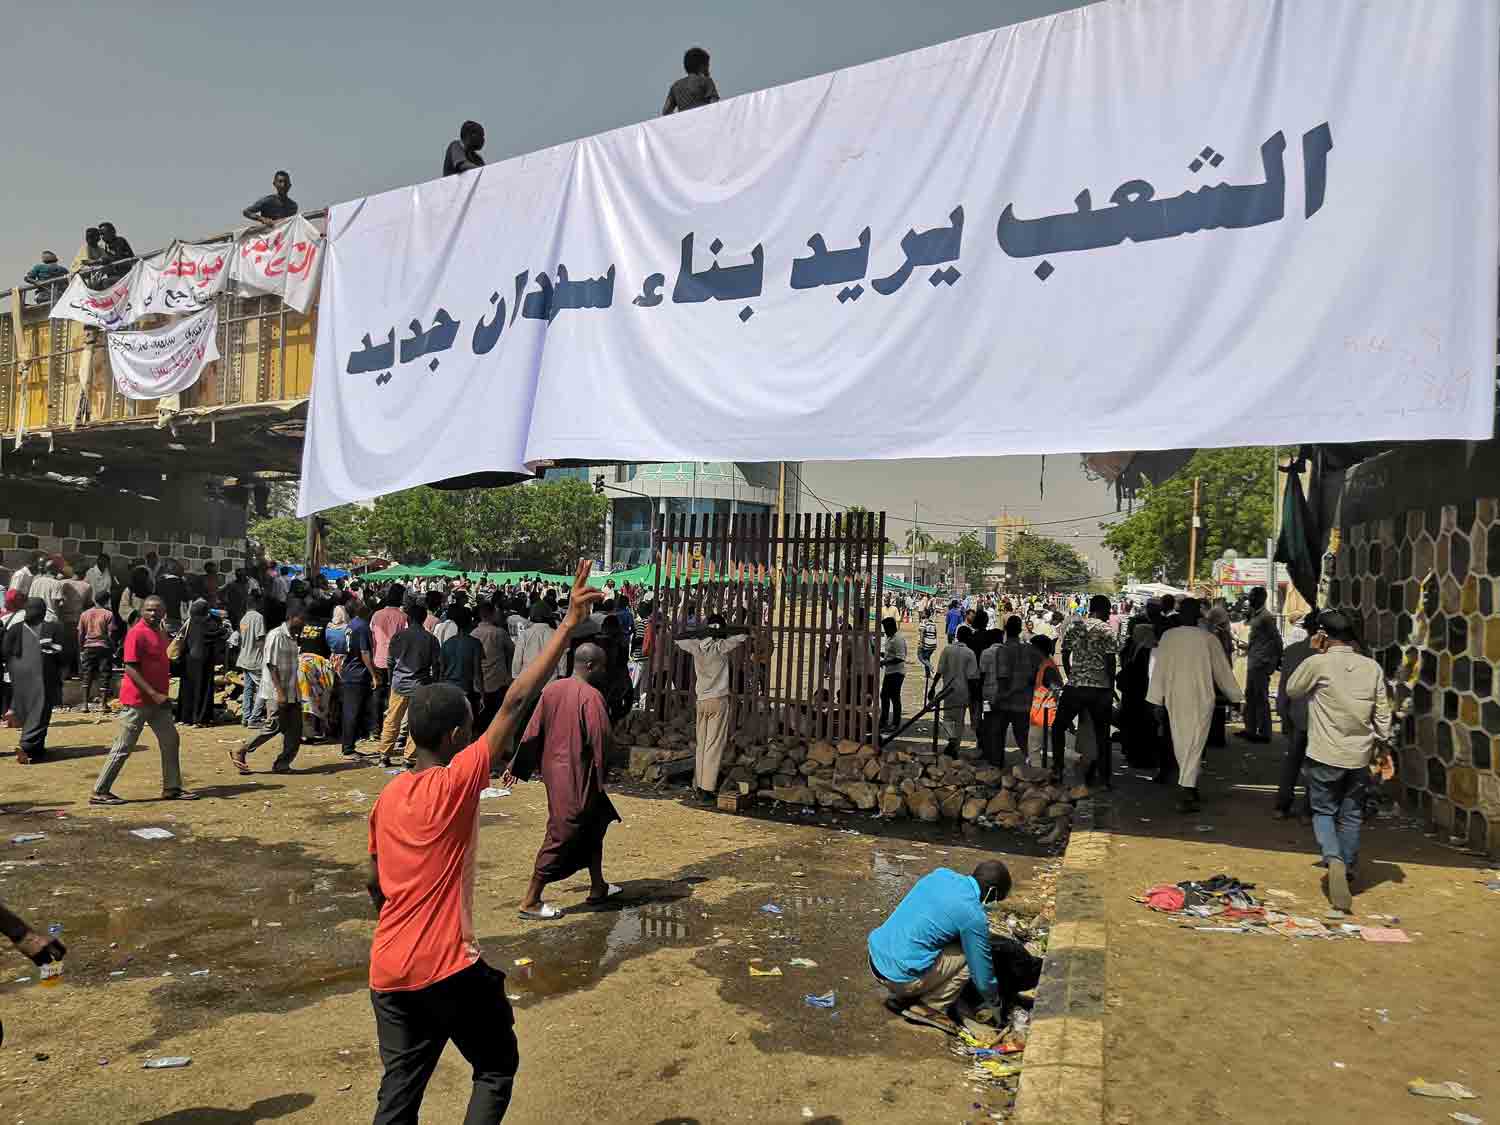 الشباب في السودان يحاول الأخذ بزمام التغيير